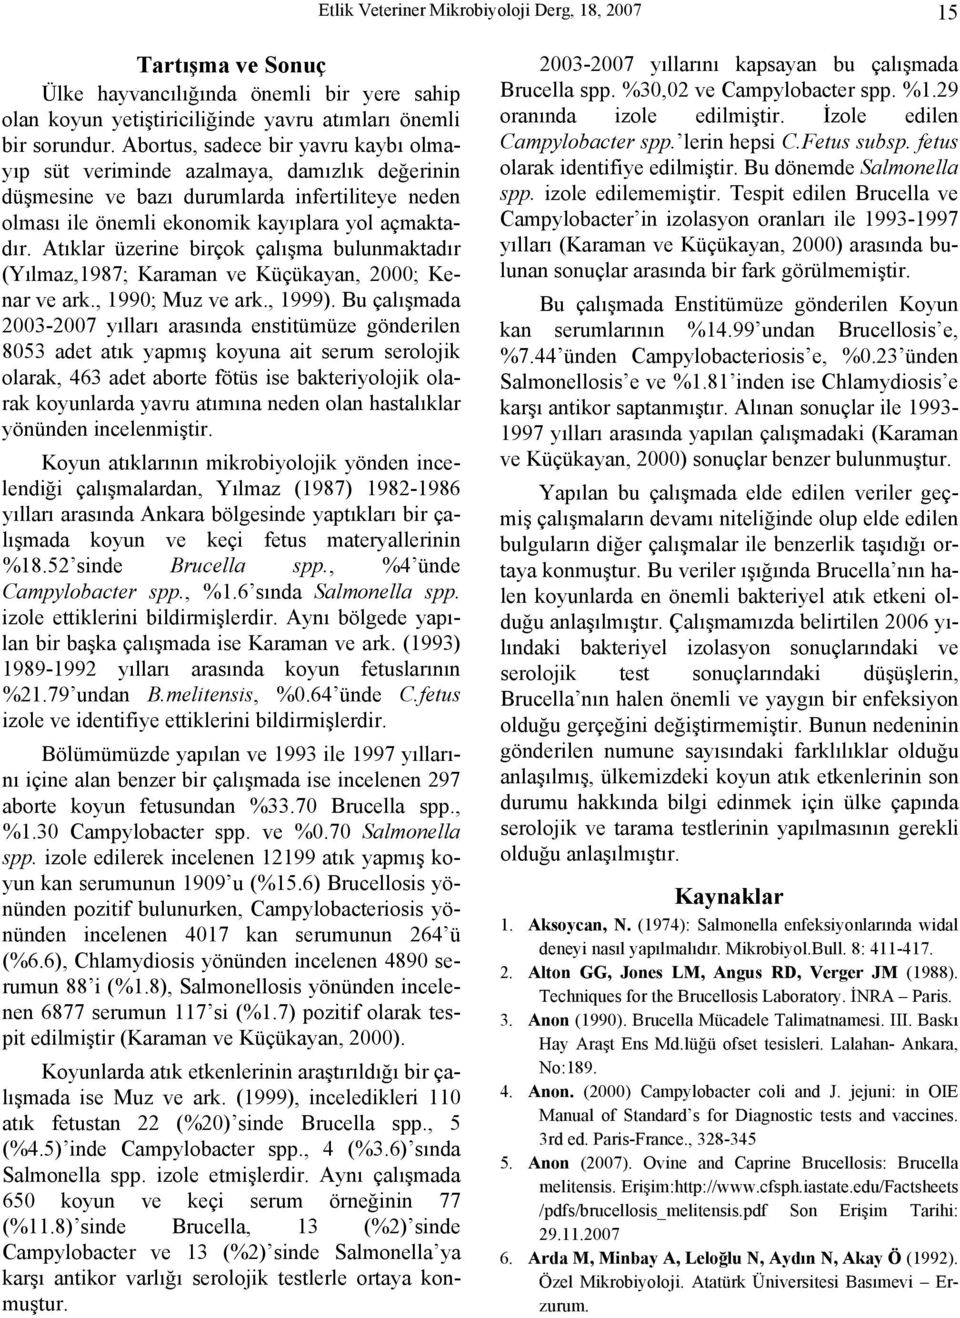 Atıklar üzerine birçok çalışma bulunmaktadır (Yılmaz,1987; Karaman ve Küçükayan, 2000; Kenar ve ark., 1990; Muz ve ark., 1999).